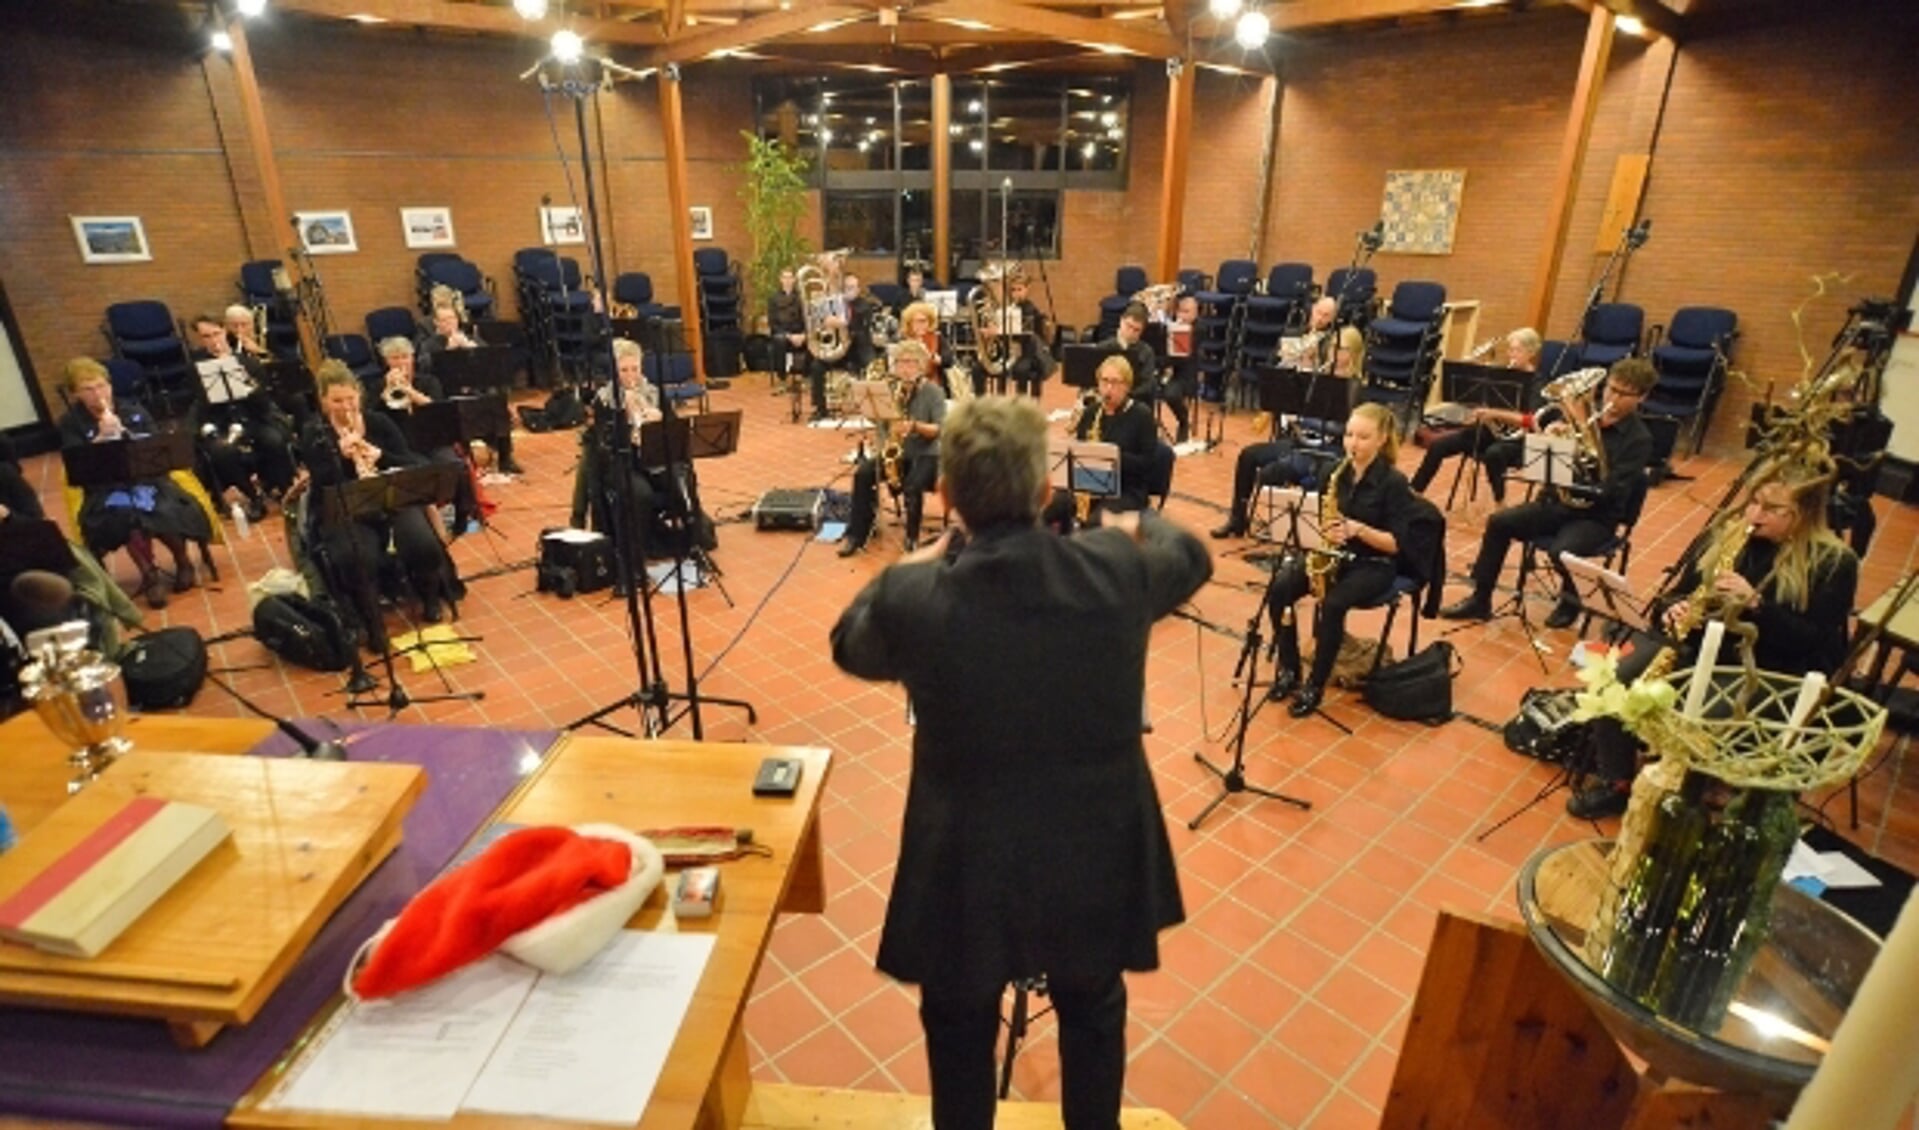 Muziekvereniging Linfano, onder leiding van de nieuwe dirigent Lucienne de Valk, tijdens de opnamen van de twee kerstnummers in Het Kruispunt. Foto: Paul van den Dungen